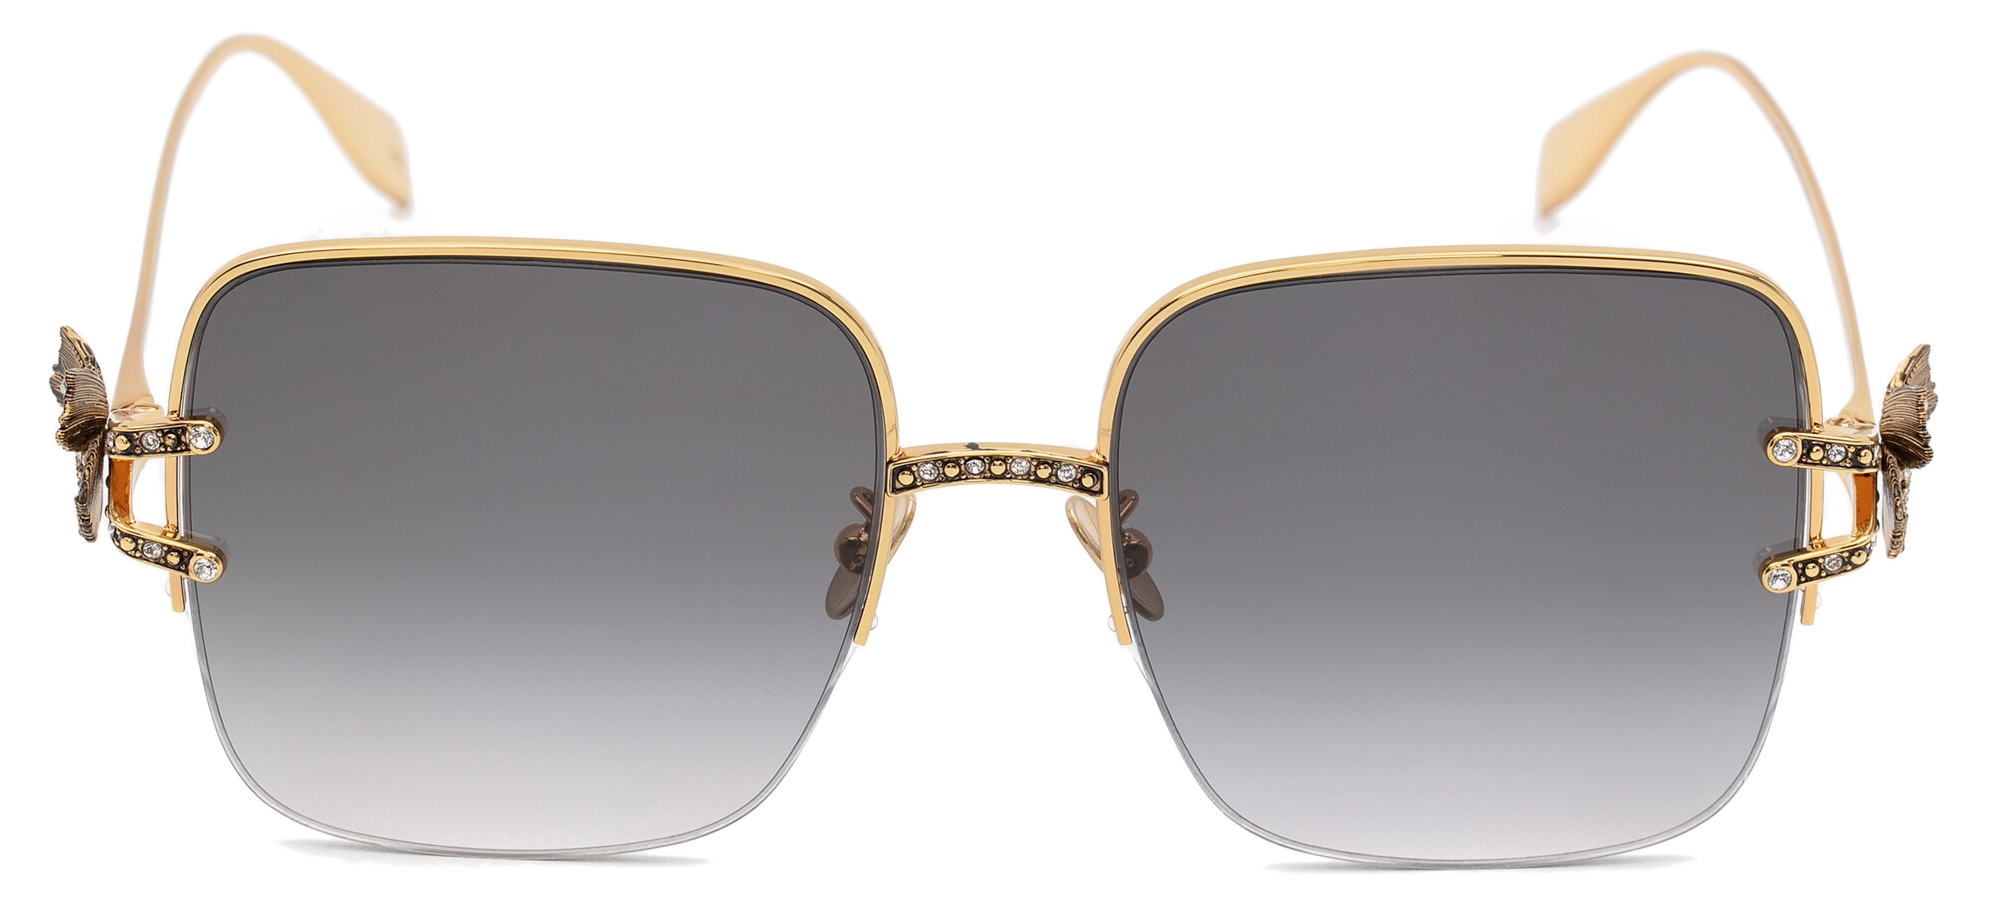 Alexander McQueen - Butterfly Jewelled Sunglasses - Gold Light